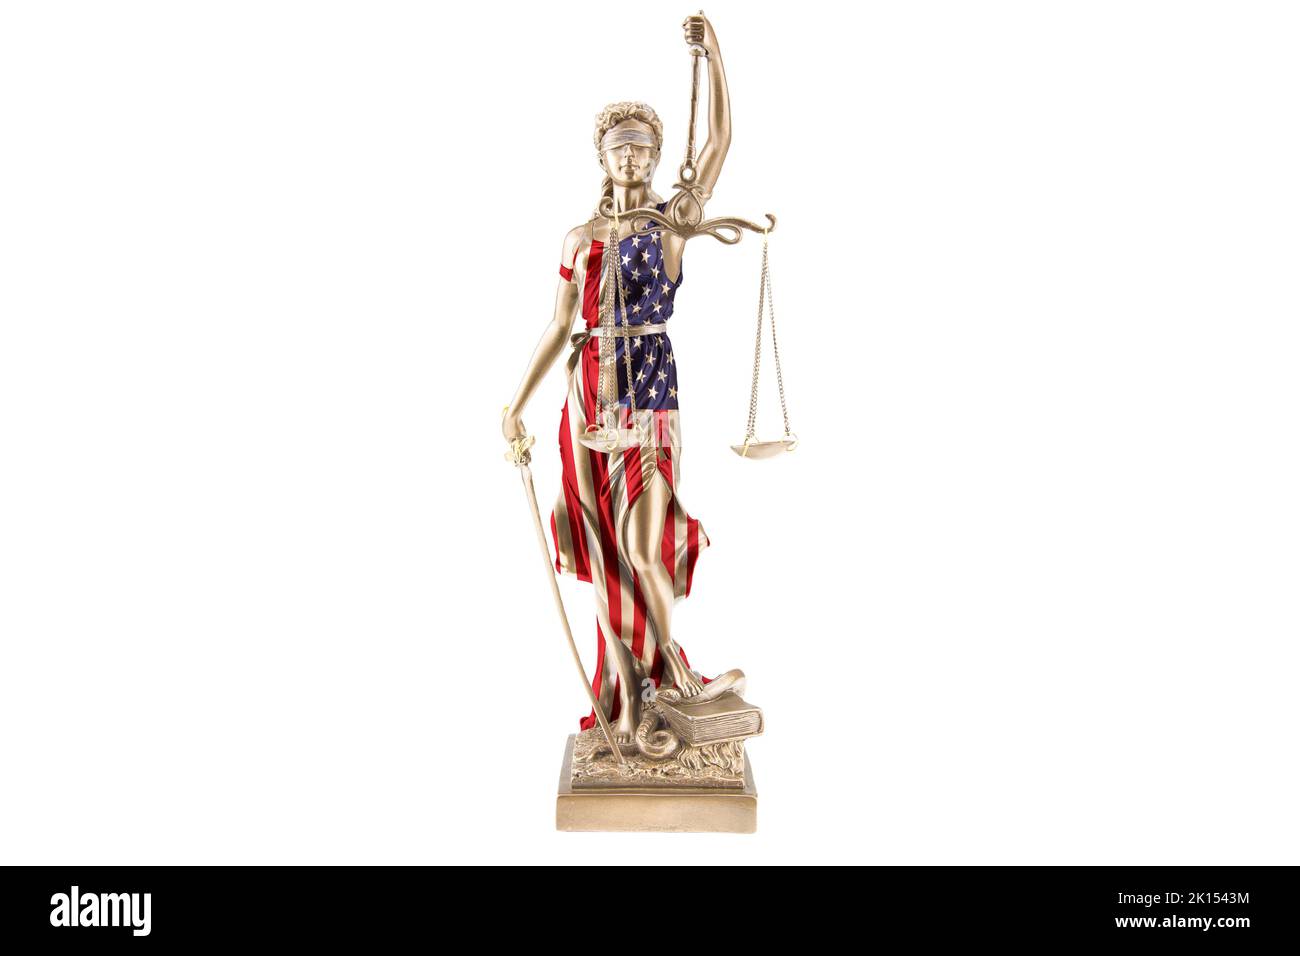 Une statue de la Justice porte le drapeau national des Etats-Unis comme robe. Elle marche sur un serpent et tient une balance dans sa main. Arrière-plan blanc. Banque D'Images